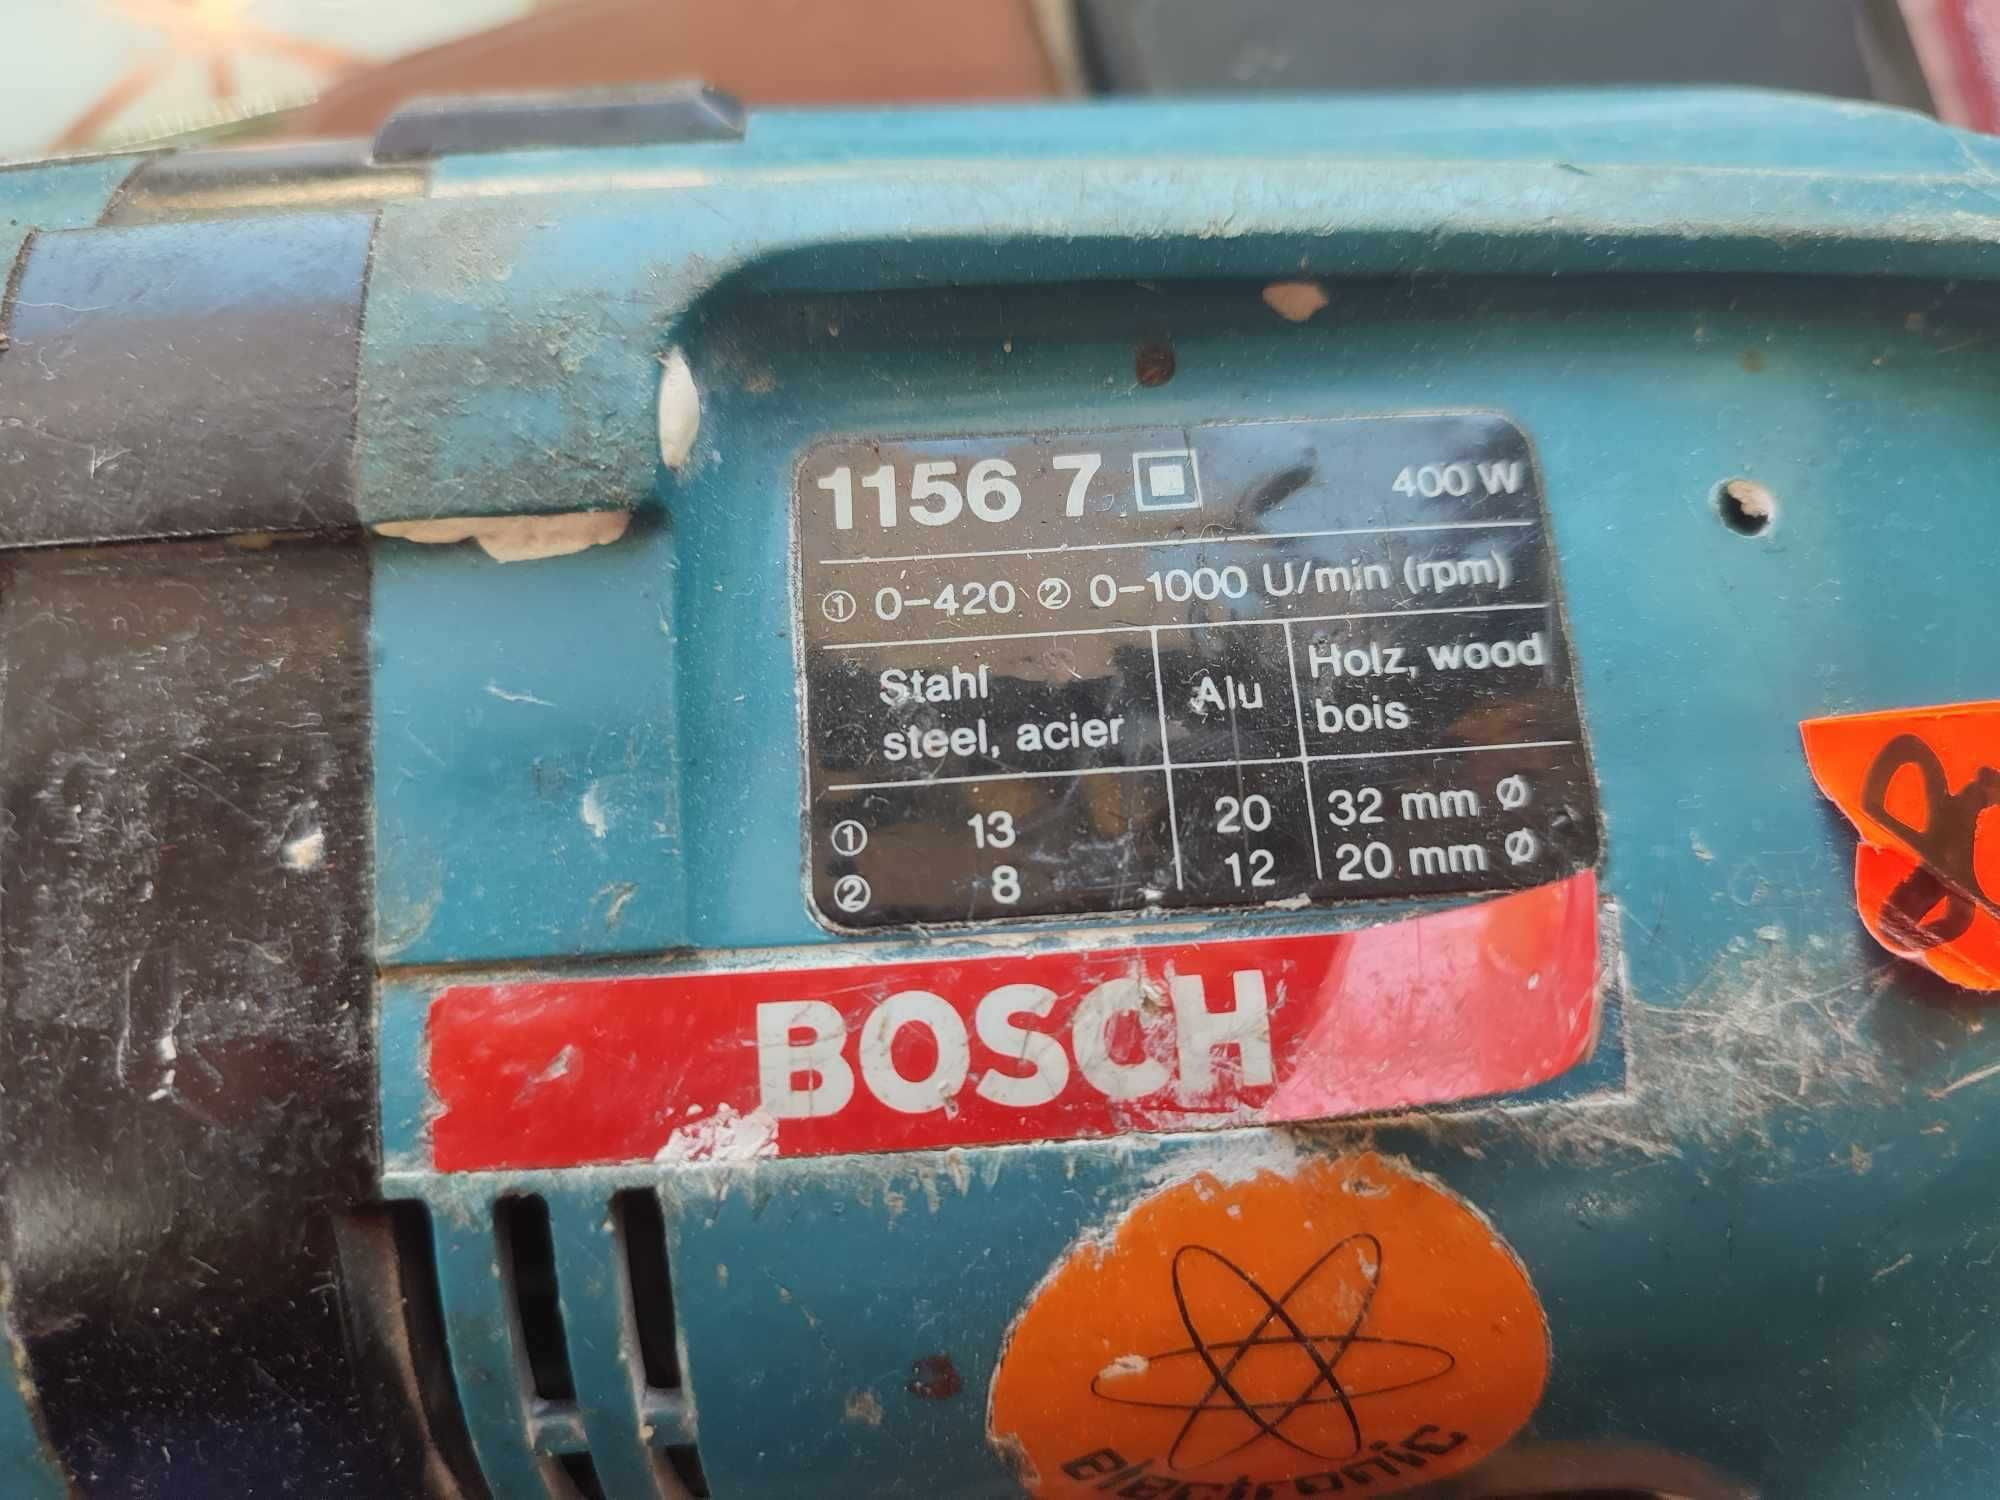 Wiertarka udarowa 400w Bosch 1156 7